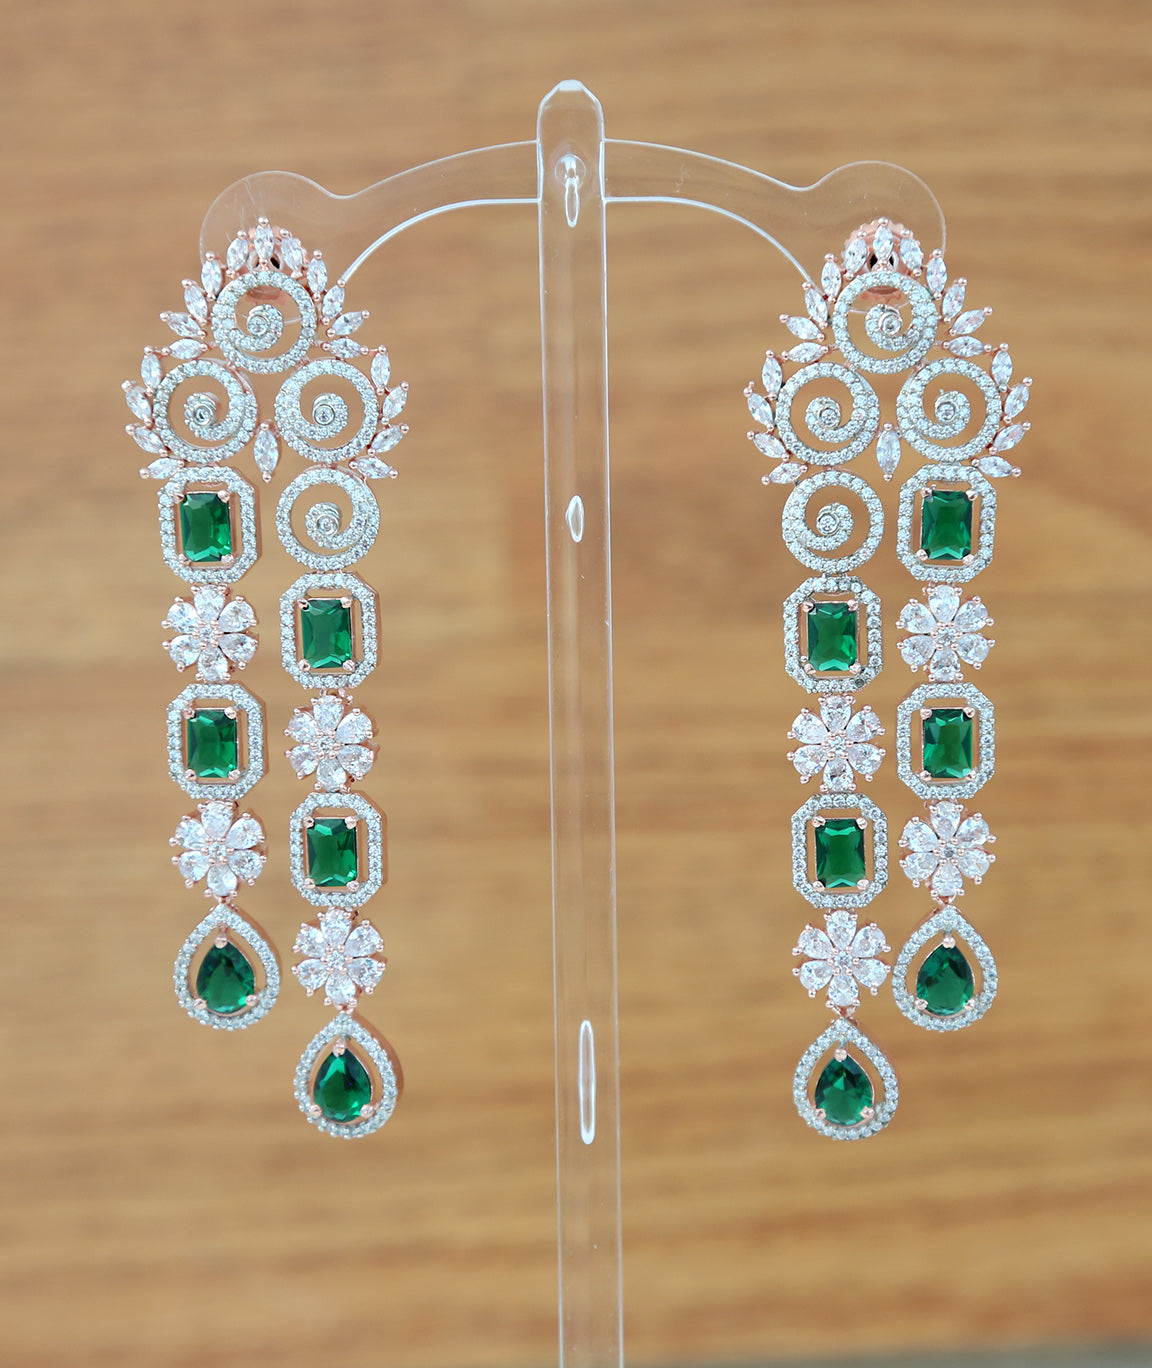 Silver earrings women | AD Floral Drop Dangler Earrings | Swarovski drop and dangle earrings | CZ stones Bollywood earrings online shopping